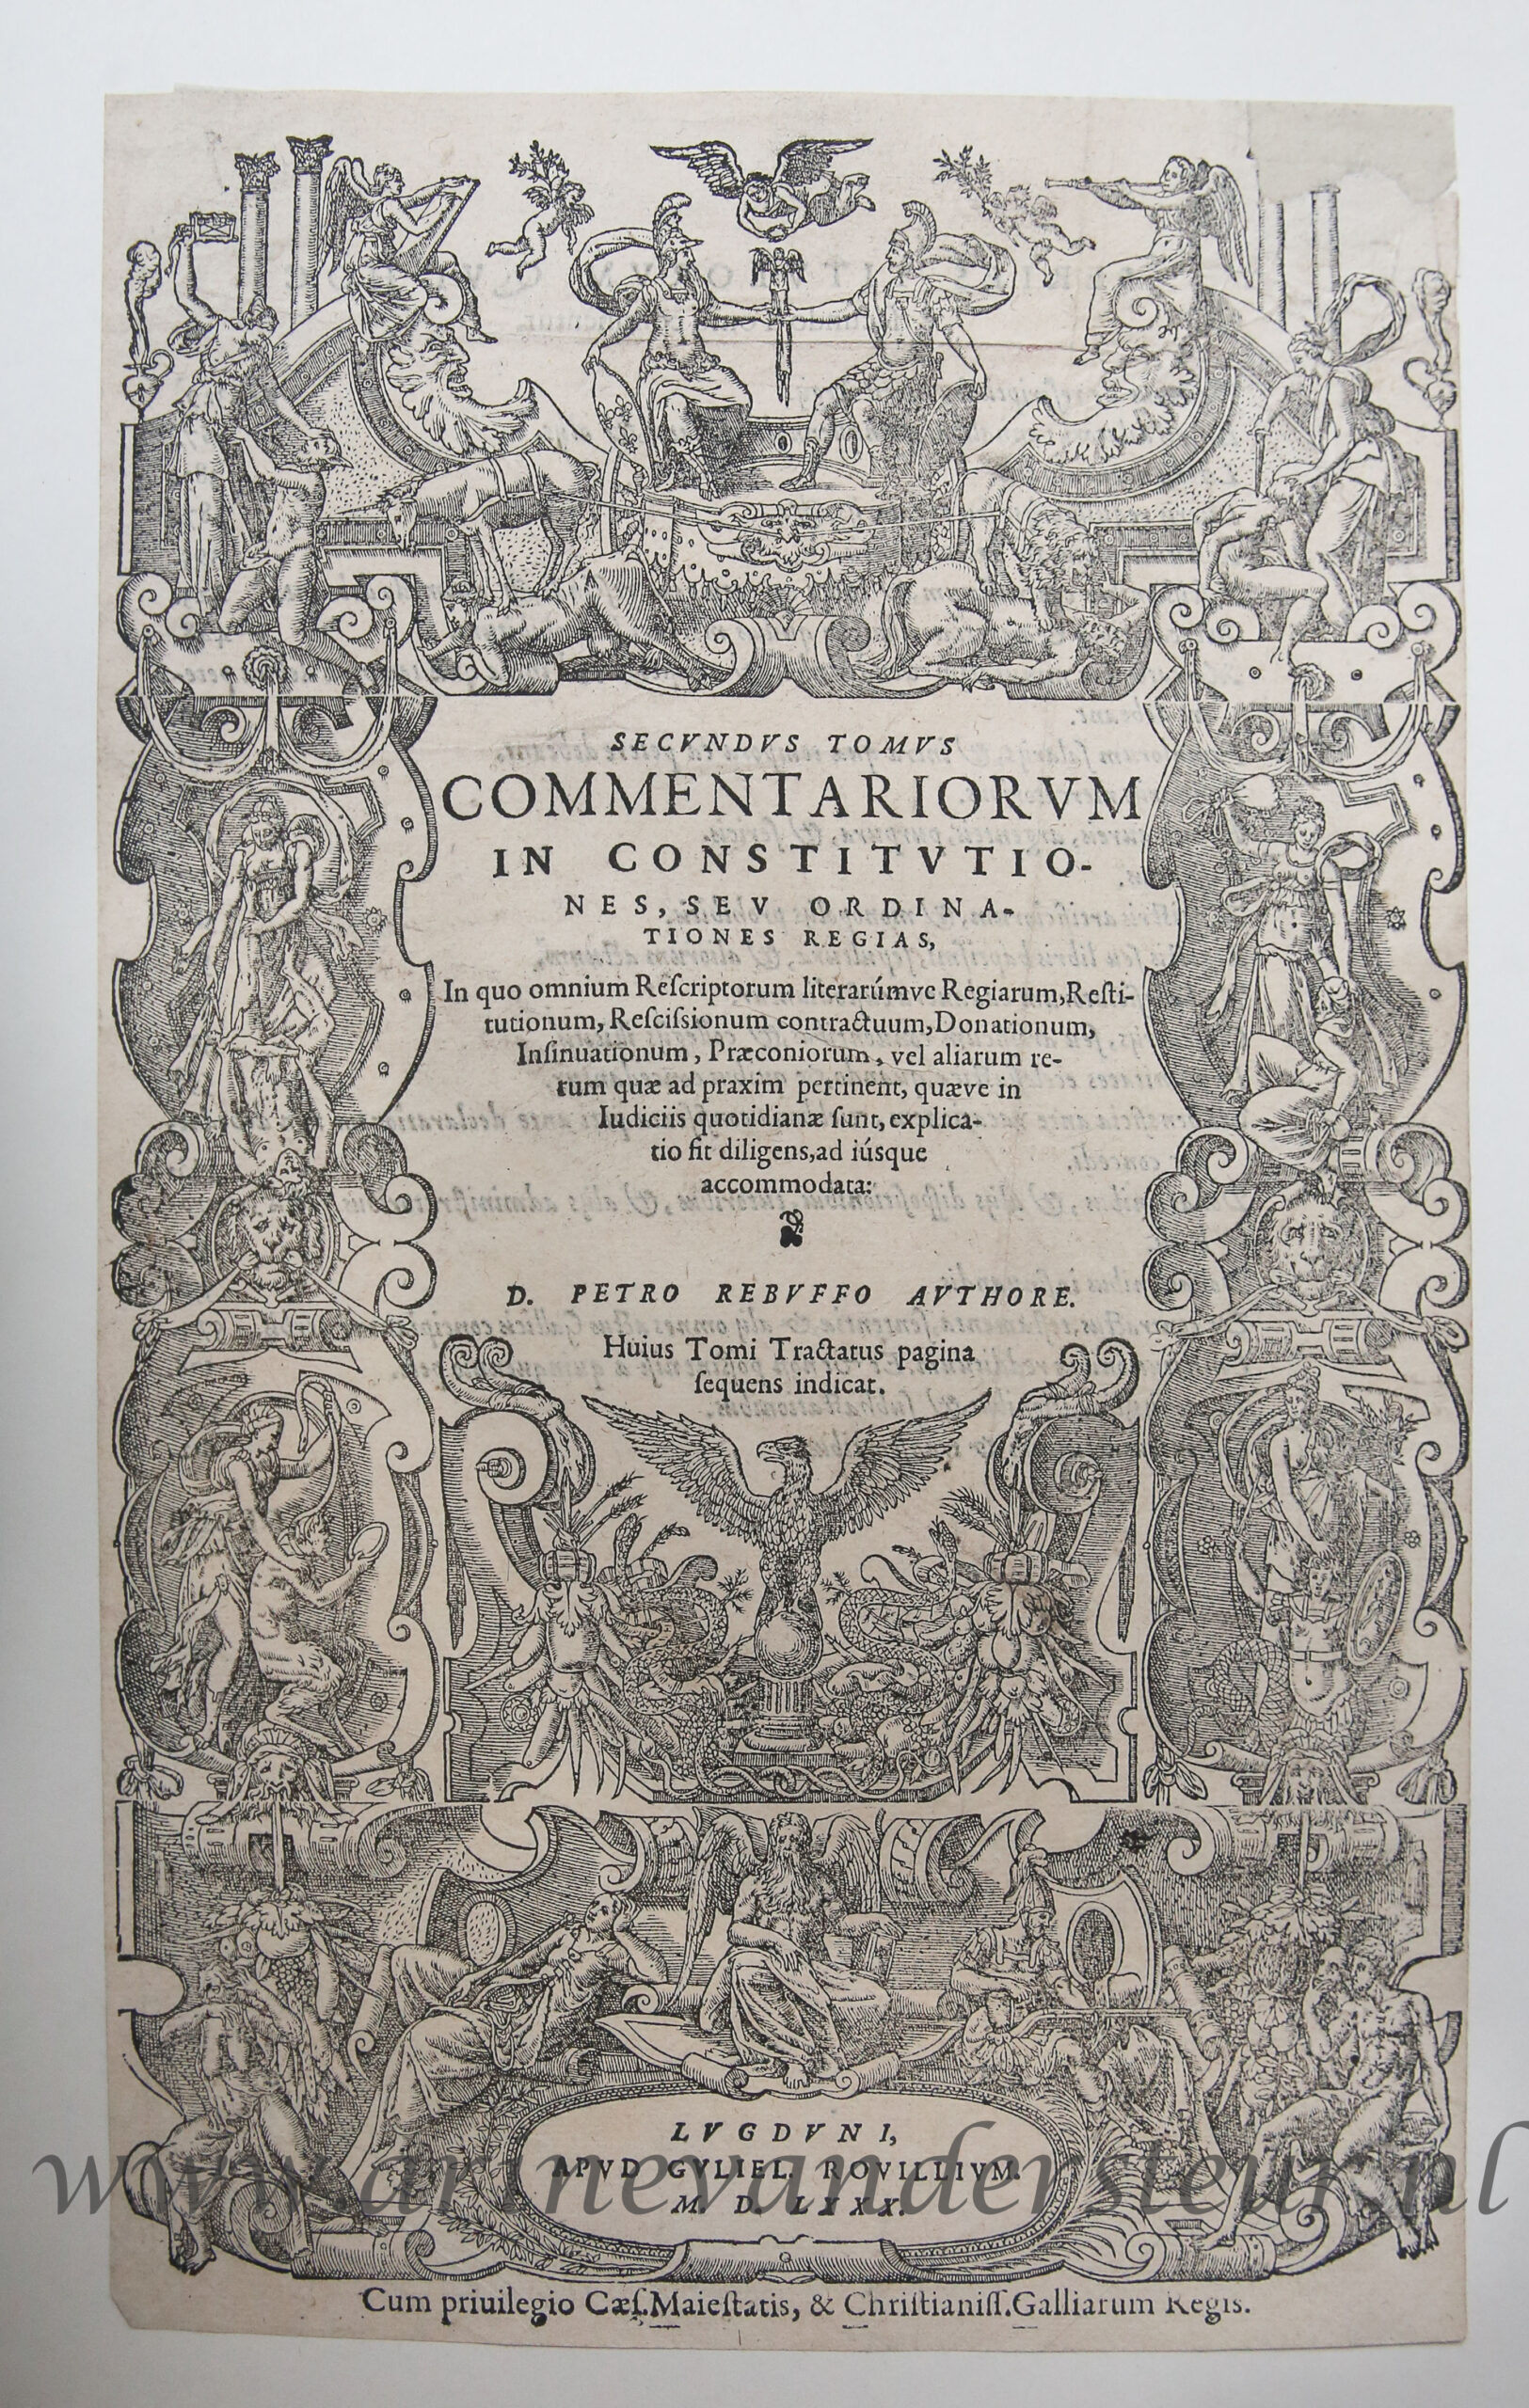 [Antique title page, 1553] COMMENTARIORUM IN CONSTITUTIONES, SEU ORDINATIONES REGIAS, published 1553, 1 p.